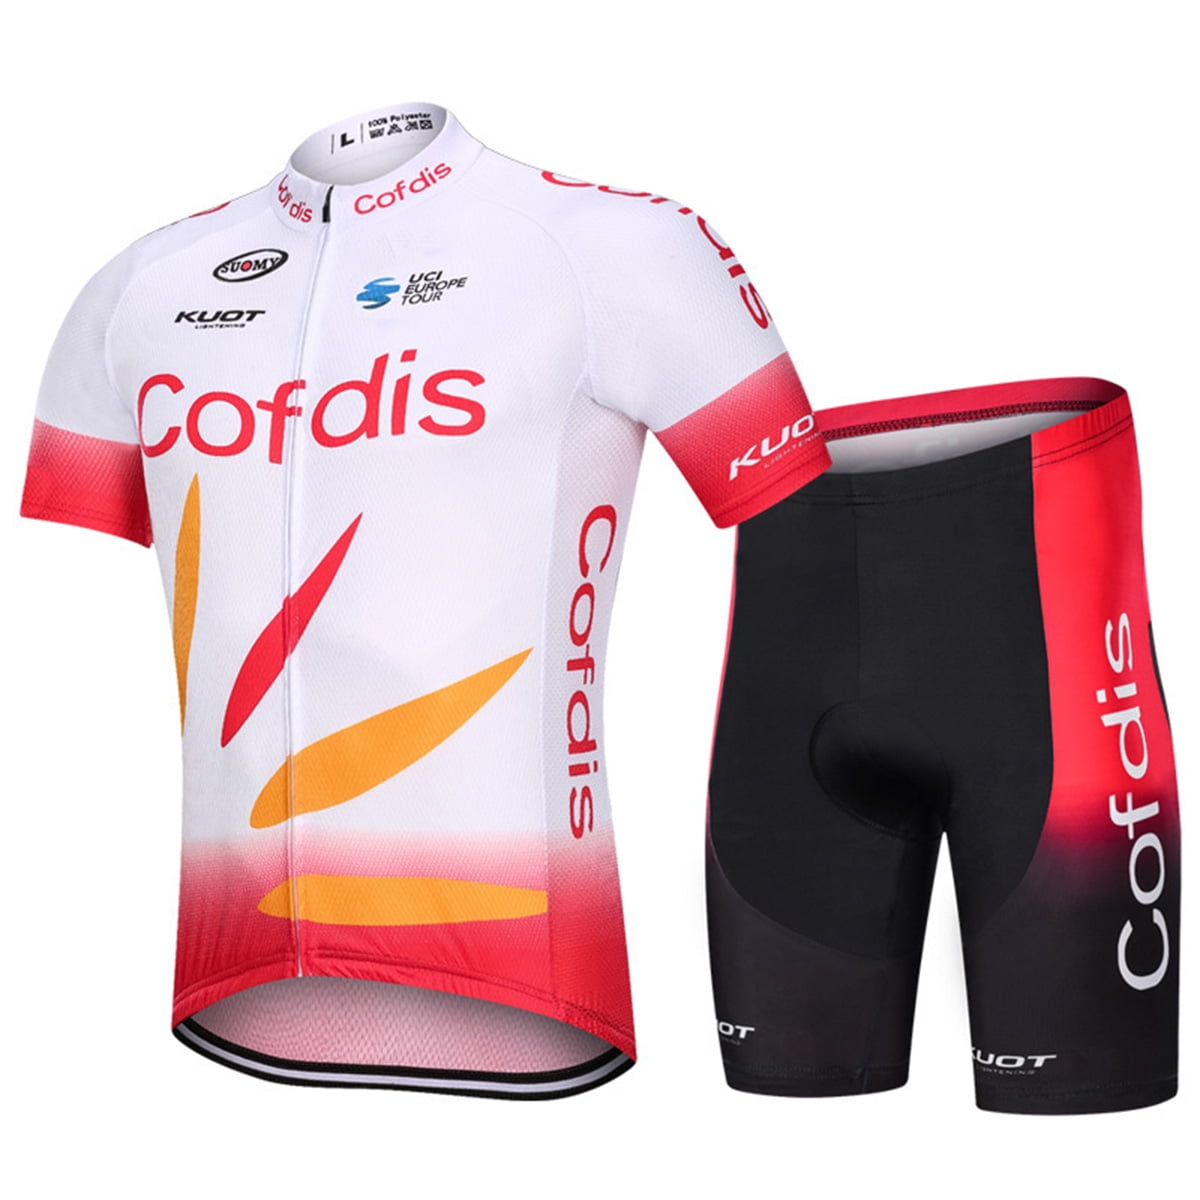 2020 Mens team cycling jersey and shorts set cycling jerseys cycling shorts 